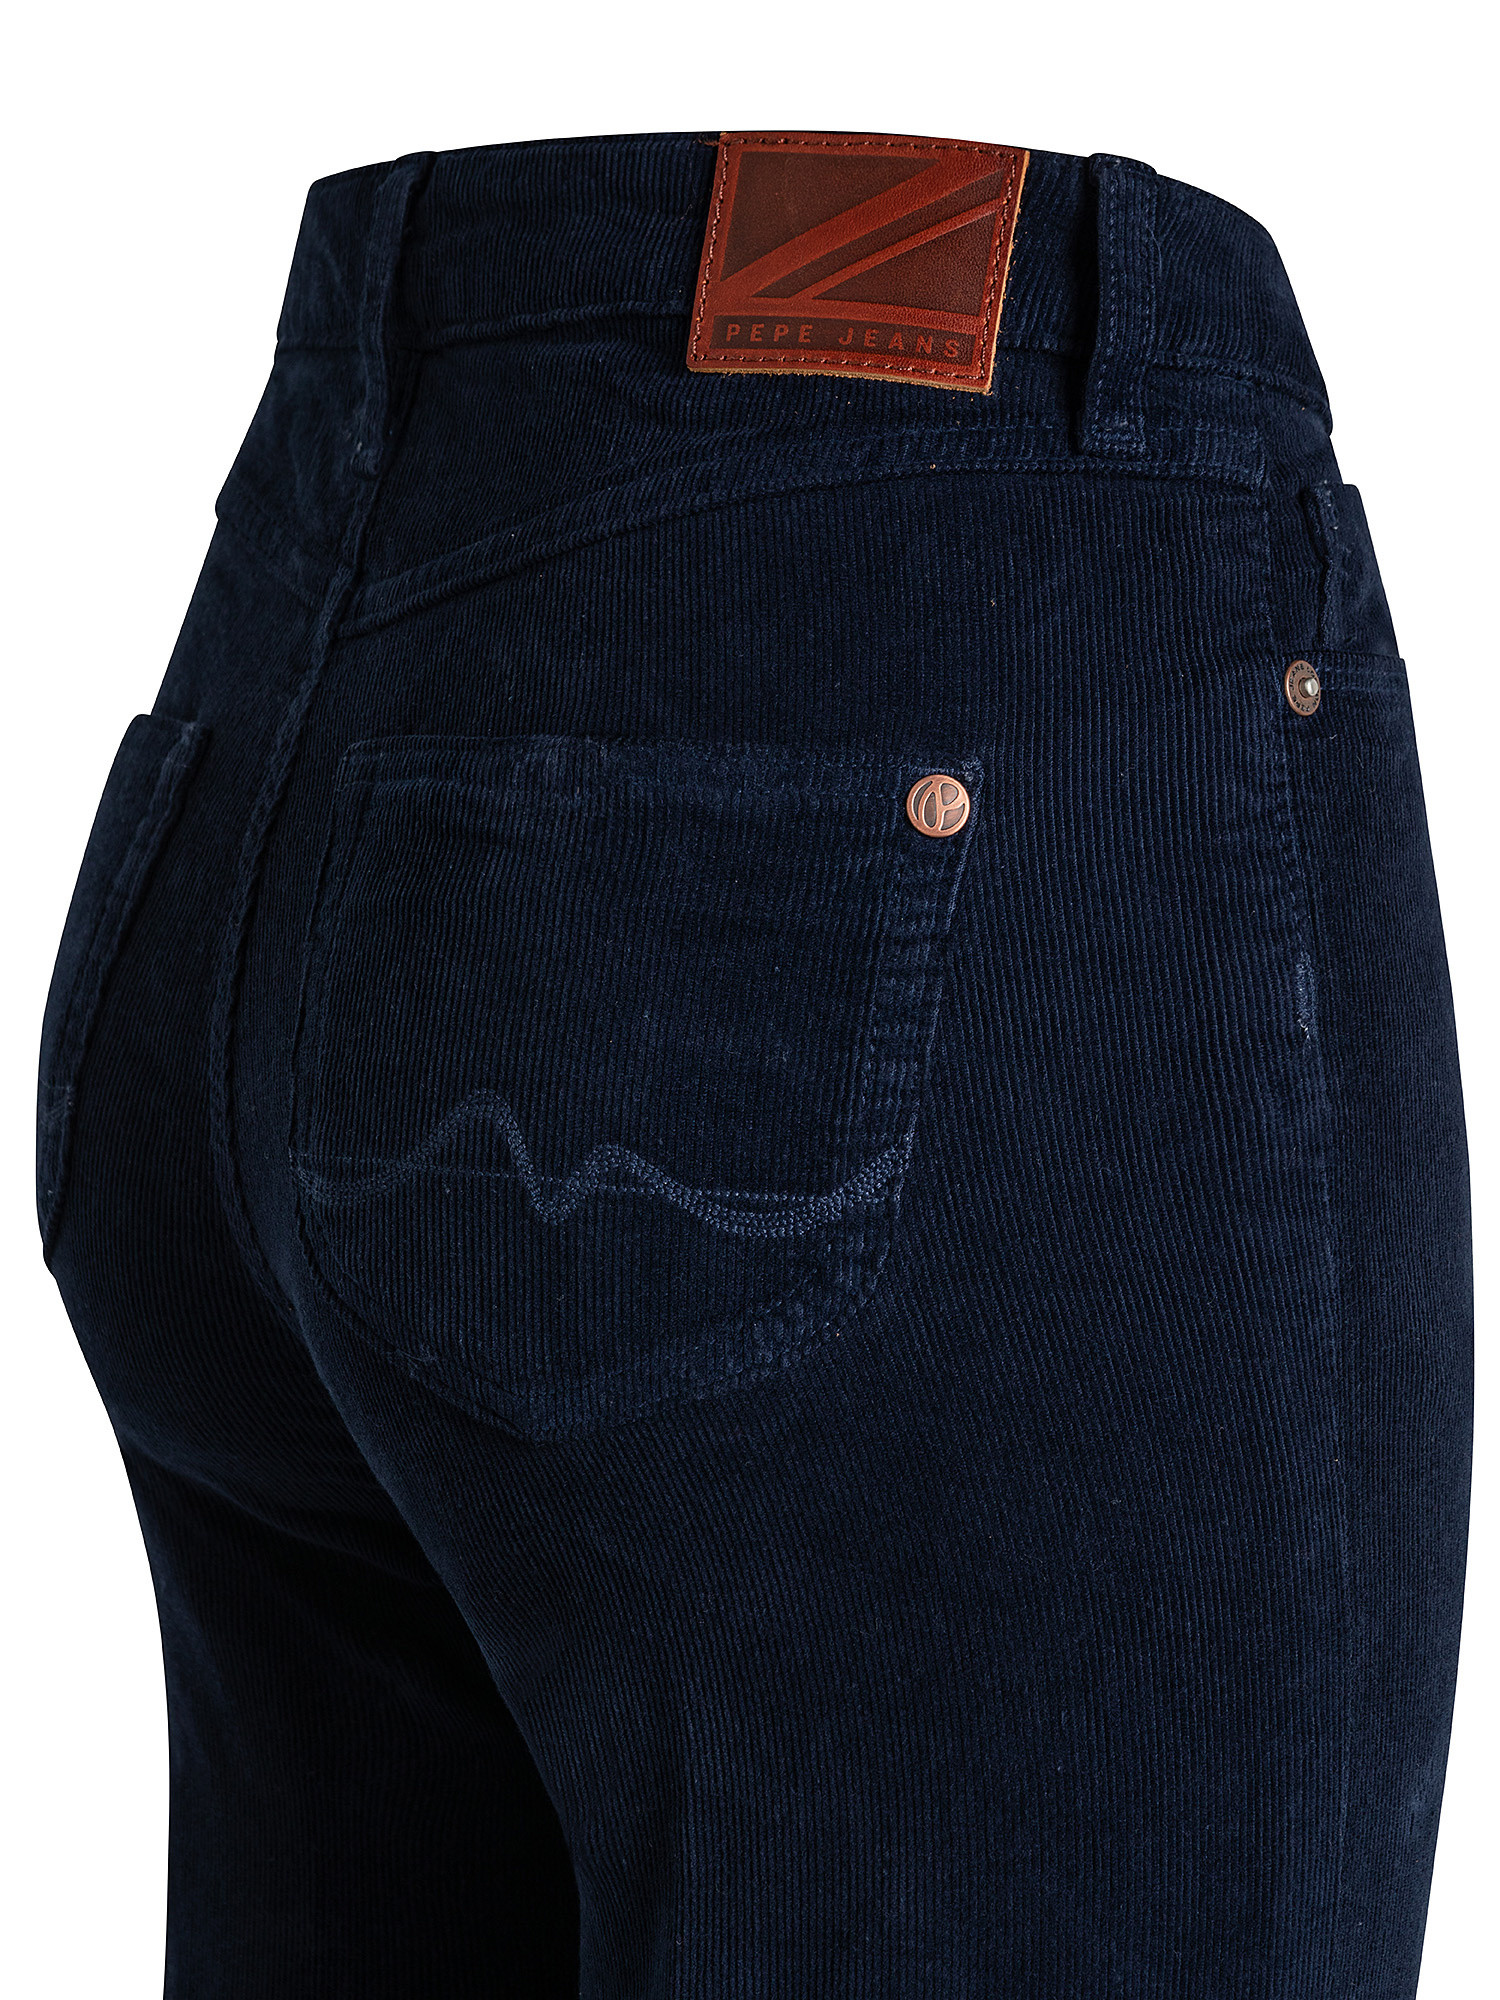 Pantaloni Willa, Blu scuro, large image number 2